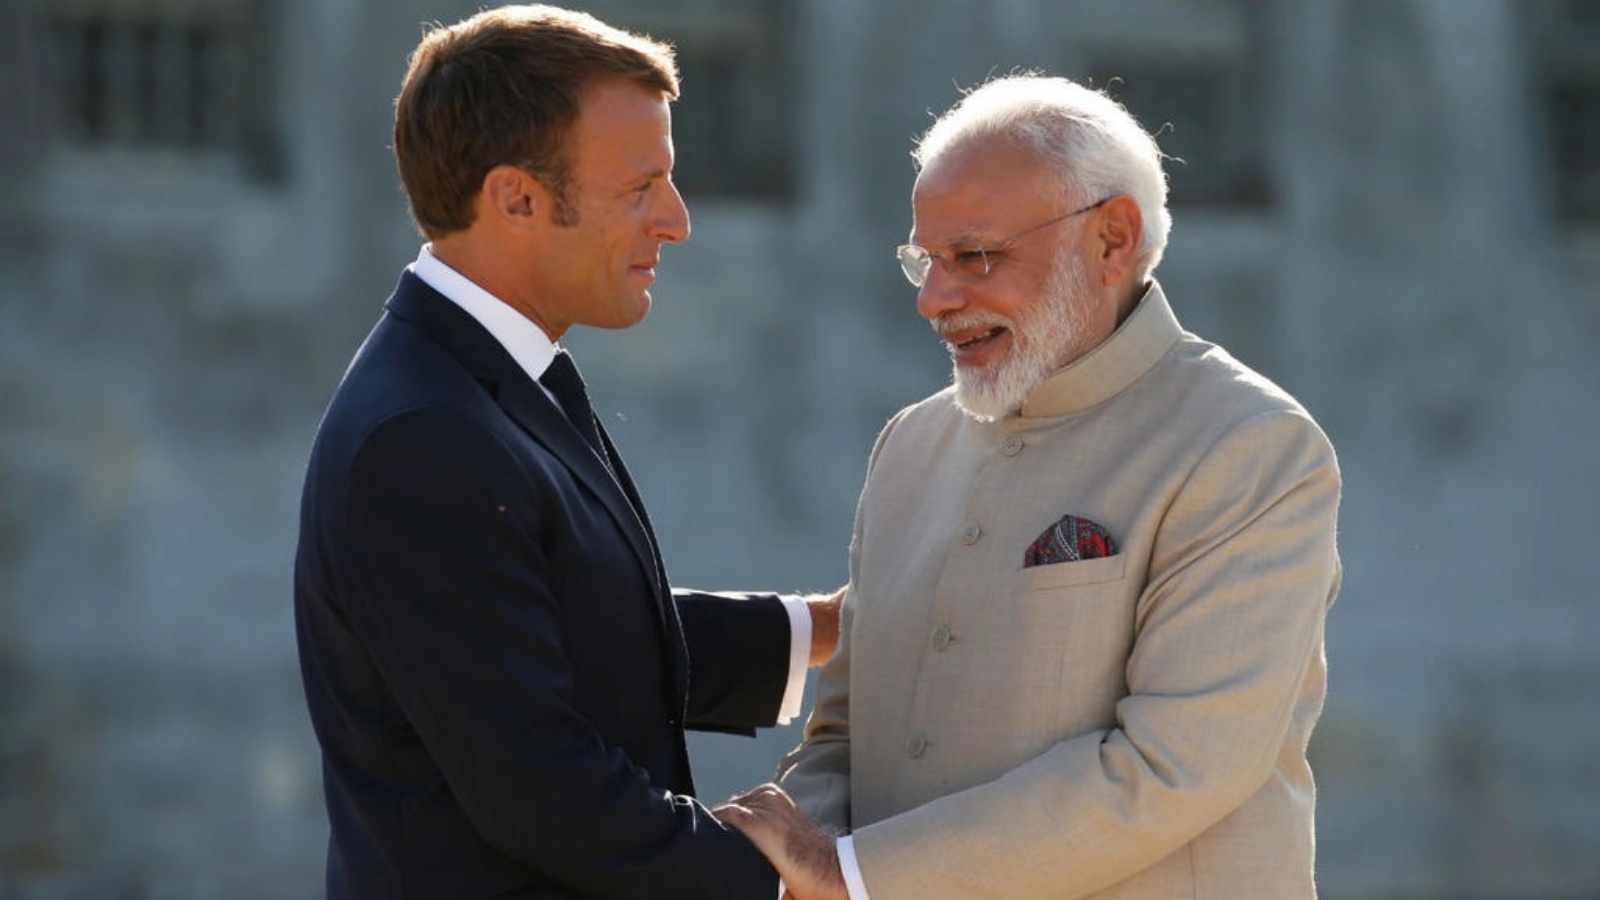 الرئيس الفرنسي إيمانويل ماكرون ورئيس الوزراء الهندي ناريندرا مودي